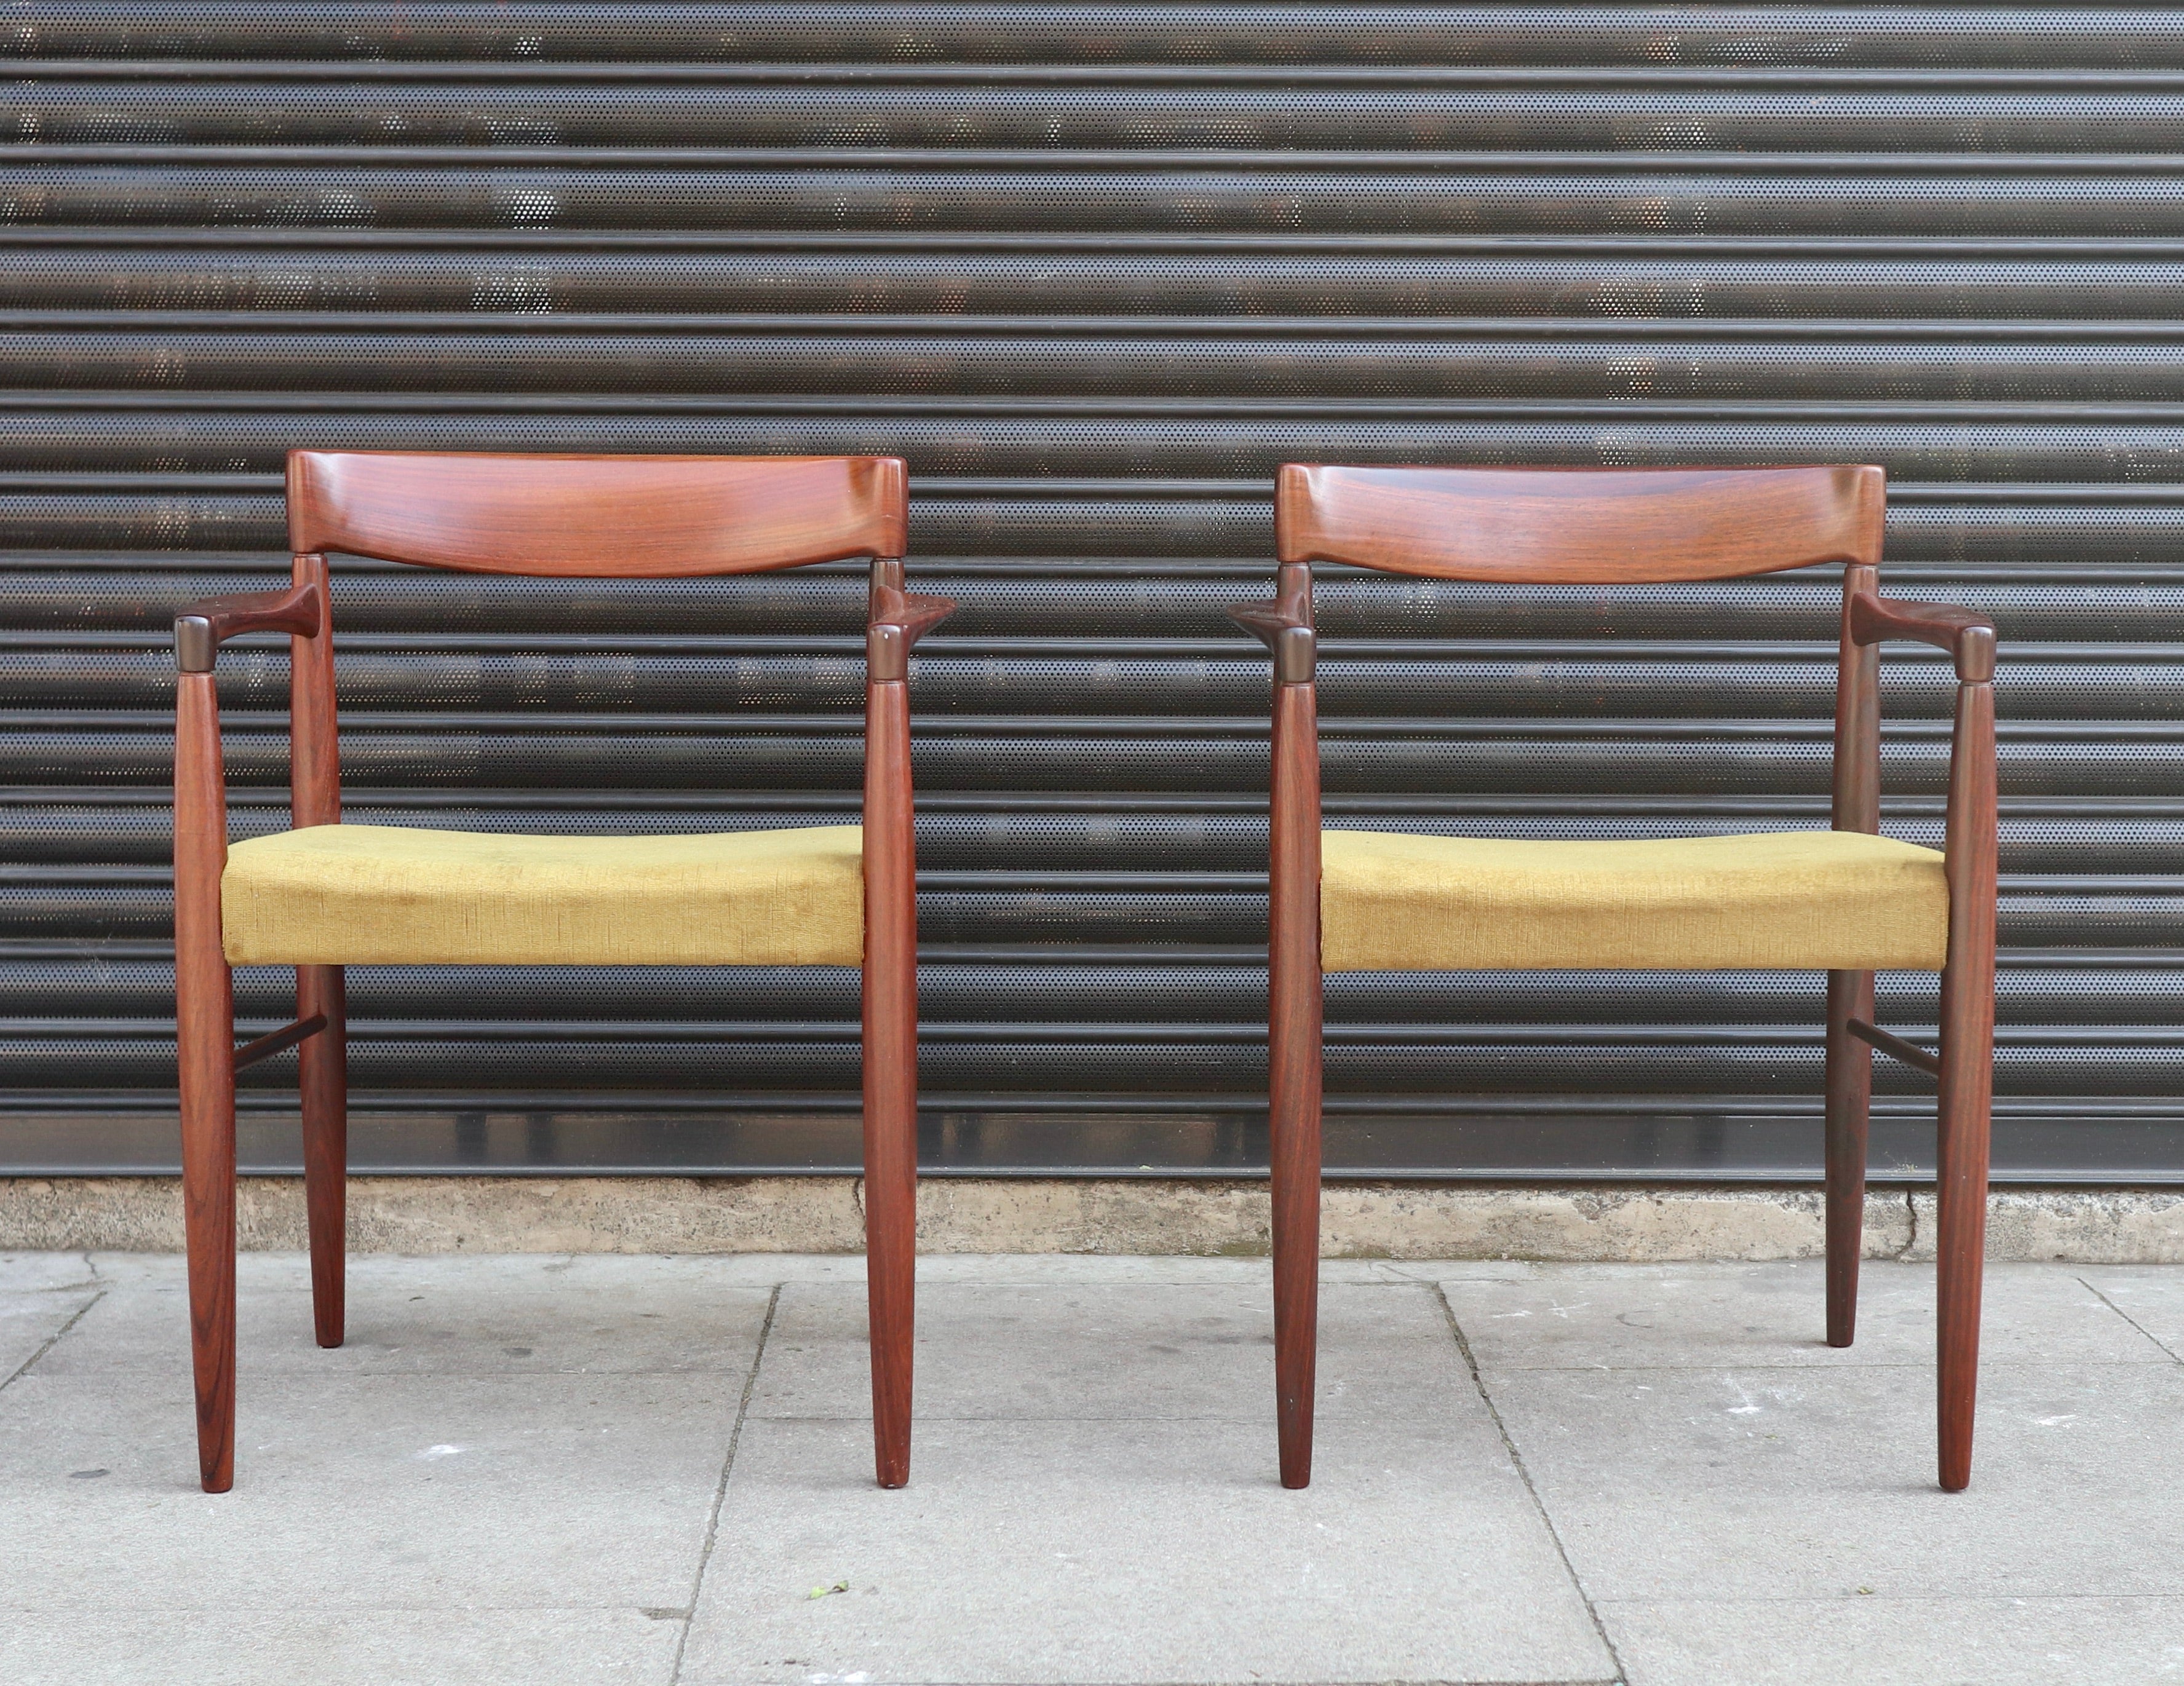 Ein schönes und stilvolles Paar dänischer Schnitzerstühle aus massivem Palisanderholz aus den 1960er Jahren, gepolstert mit dem originalen gelben Veloursstoff.  Diese von H. W. Klein entworfenen Stühle wurden von Bramin hergestellt und befinden sich